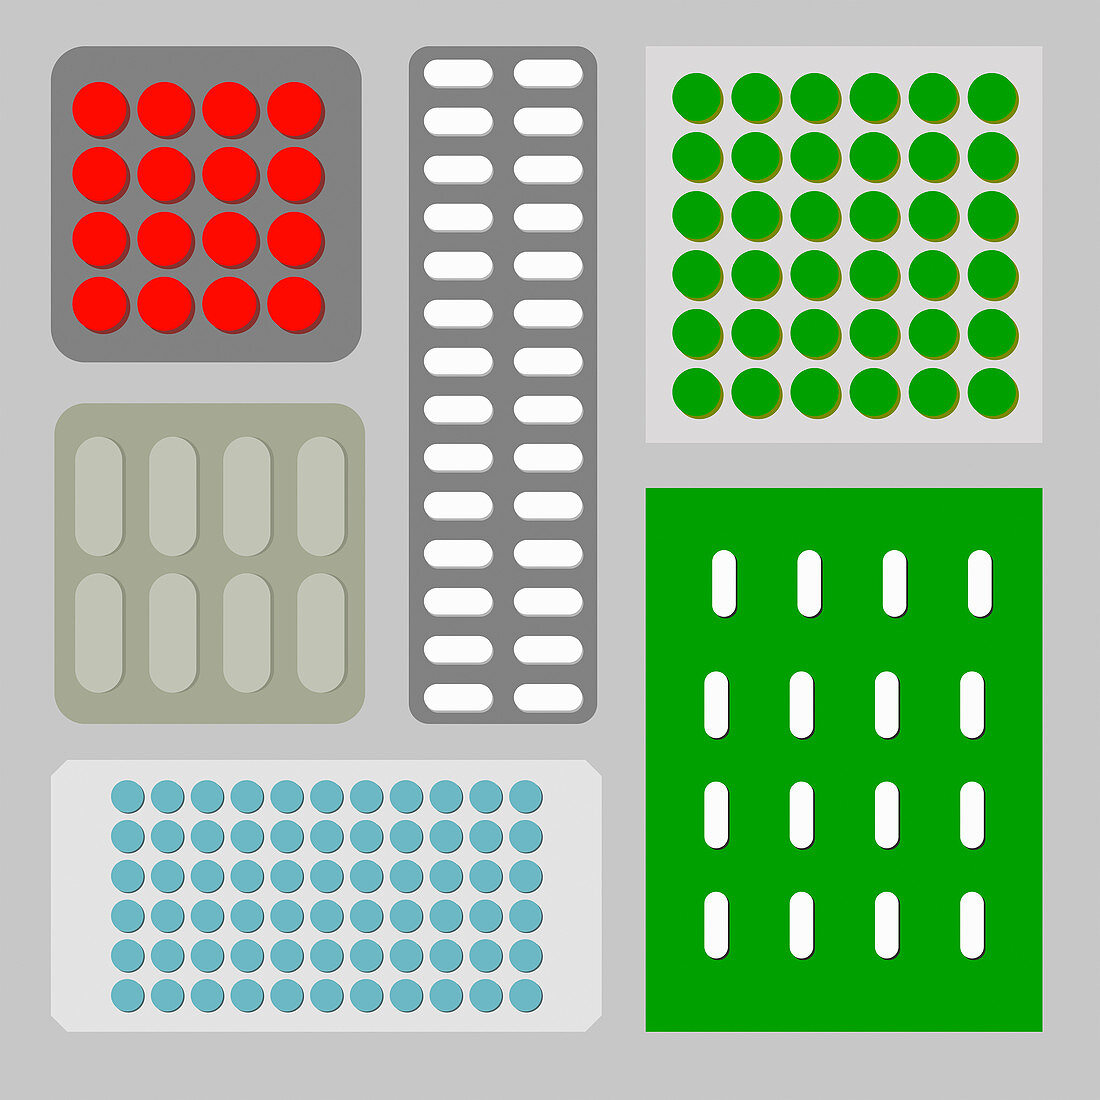 Blister packs of pills arranged in pattern, illustration